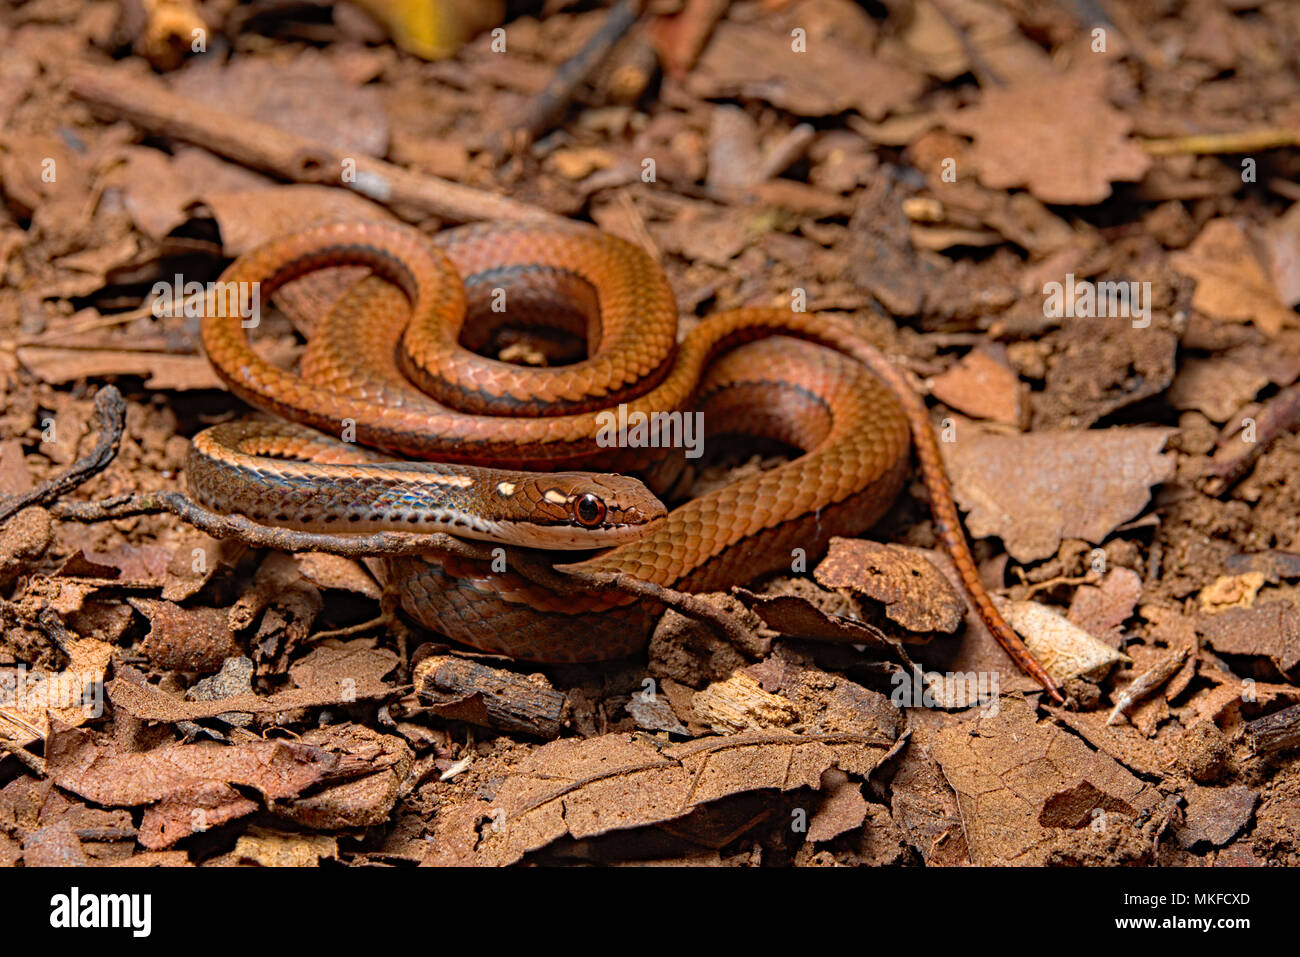 Adornado elegante serpiente marrón (Rhadinaea decorata), Costa Rica Foto de stock